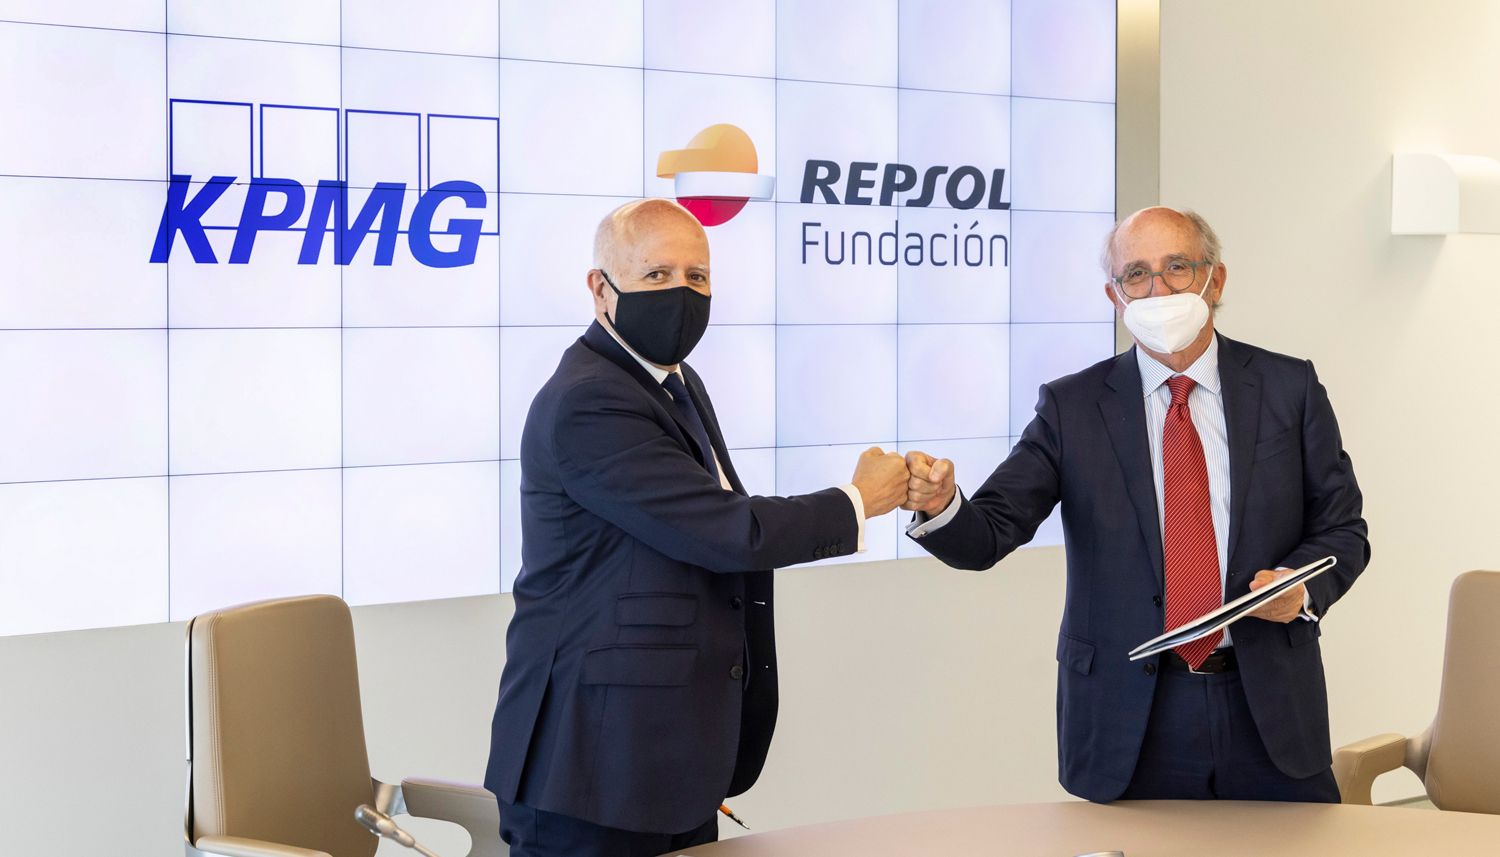 Fundación Repsol y KPMG, objetivo compensar emisiones